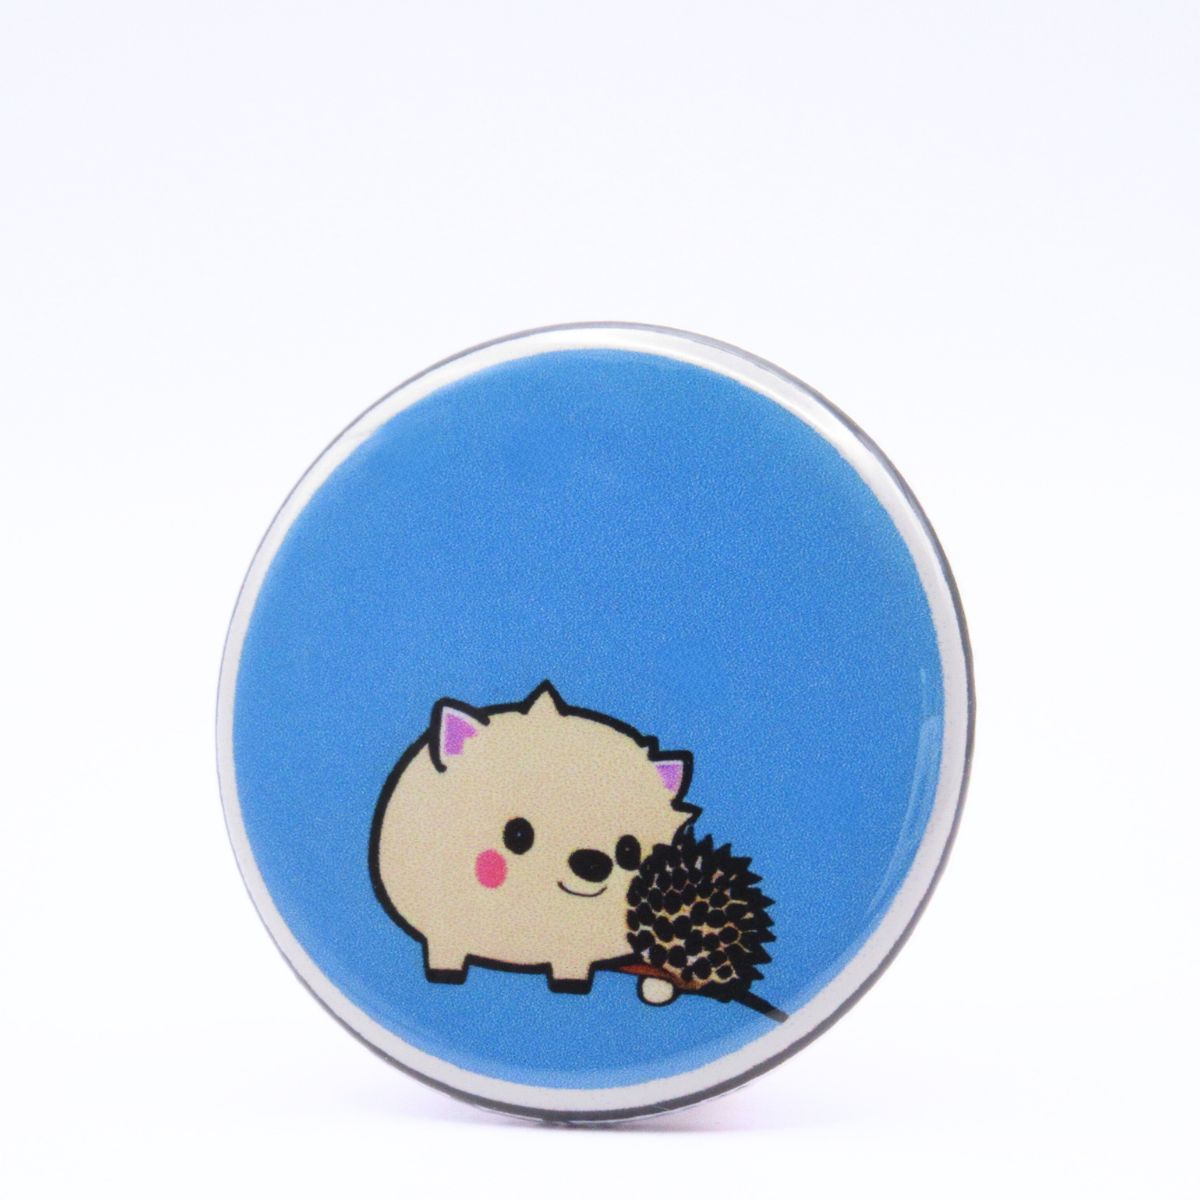 BooBooRoo Pinback Button (i.e. button, badge, pin) of an Adorable Hedgehog